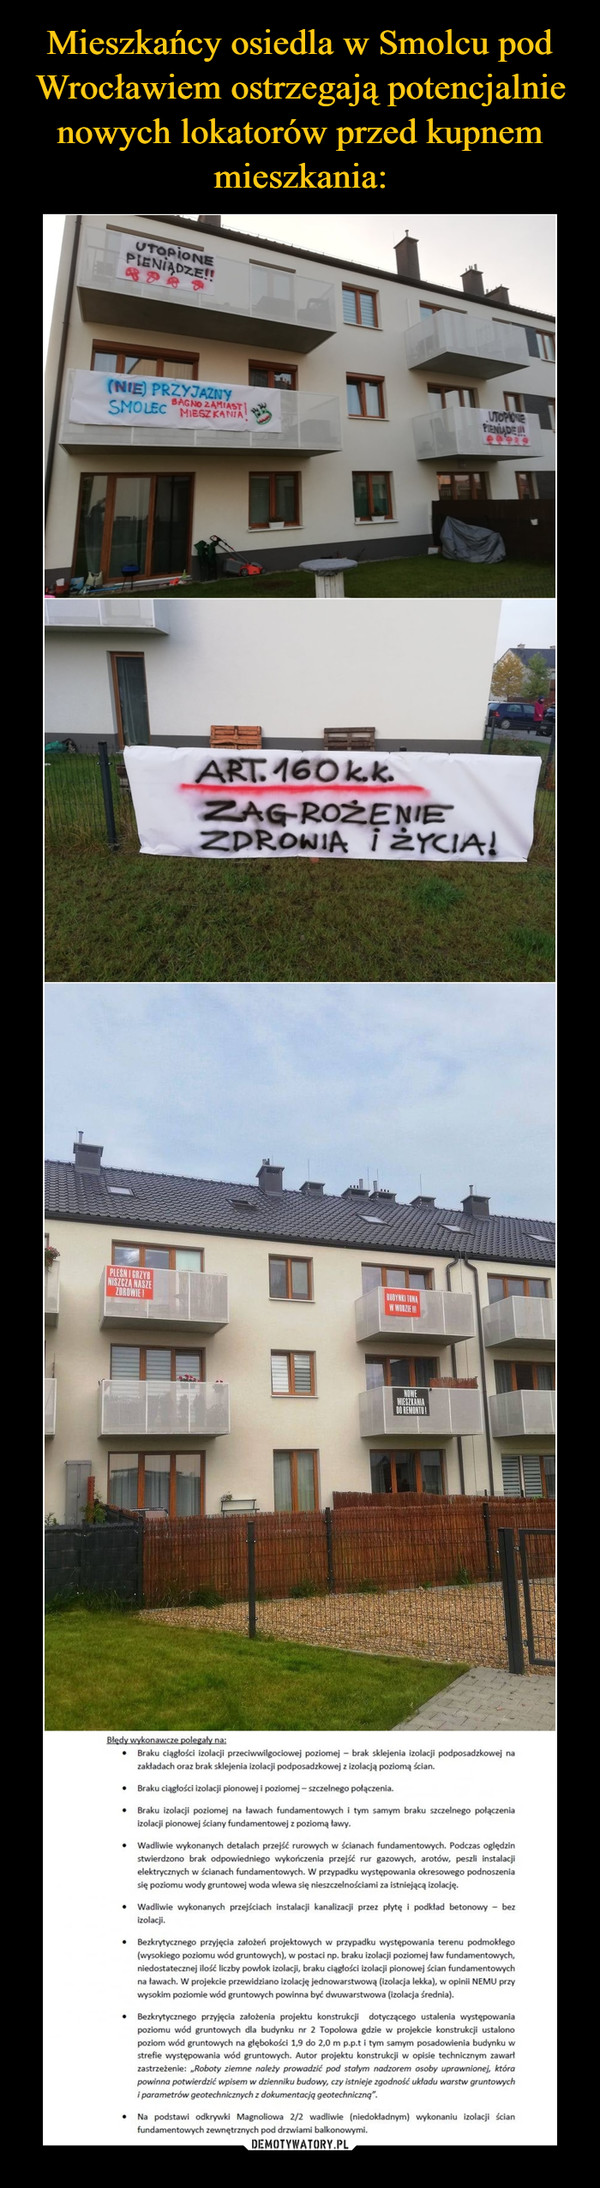 Mieszkańcy osiedla w Smolcu pod Wrocławiem ostrzegają potencjalnie nowych lokatorów przed kupnem mieszkania: